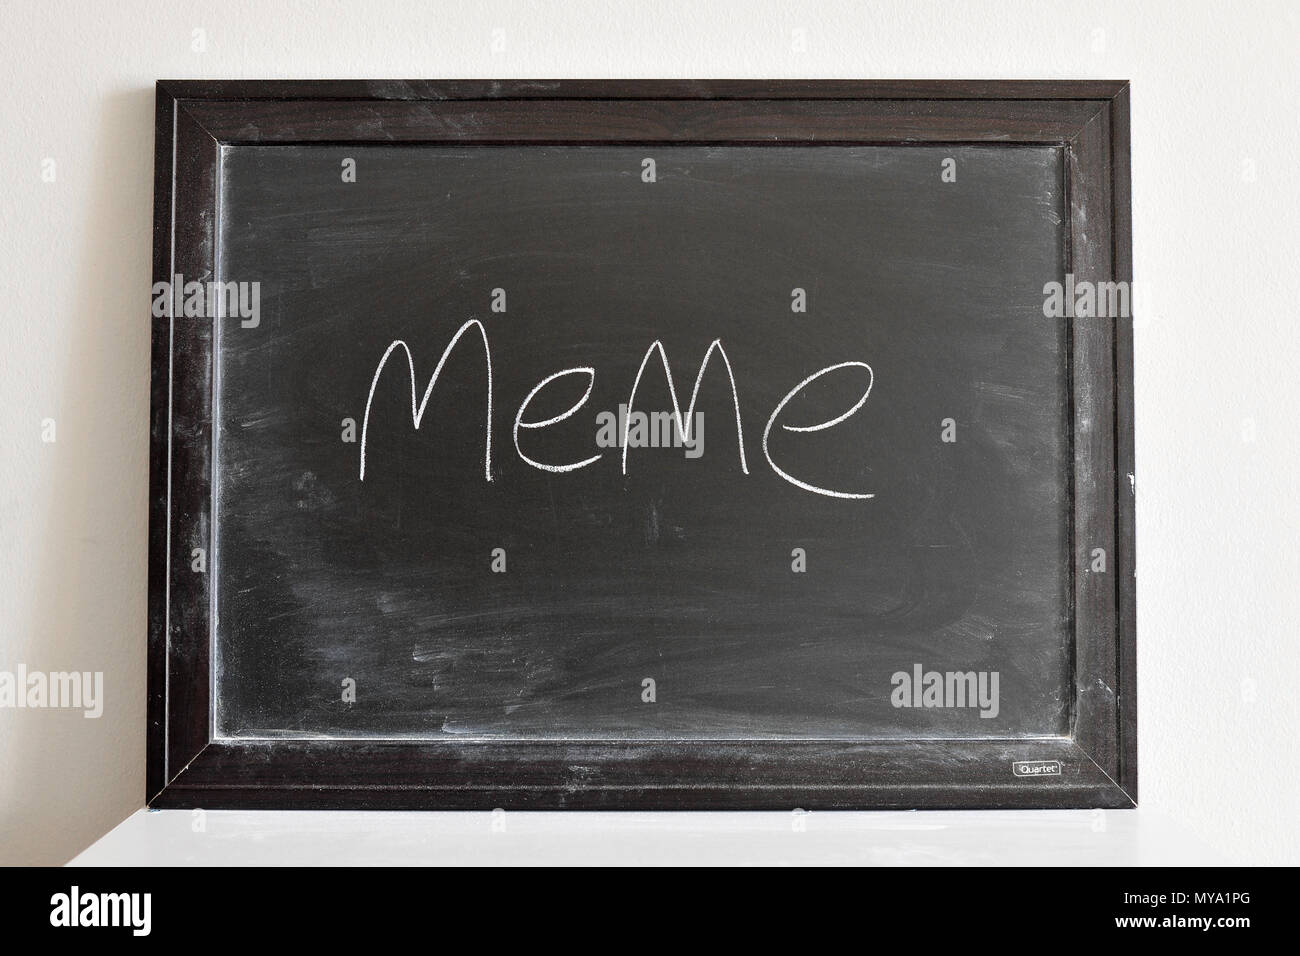 meme written in white chalk on a blackboard Stock Photo